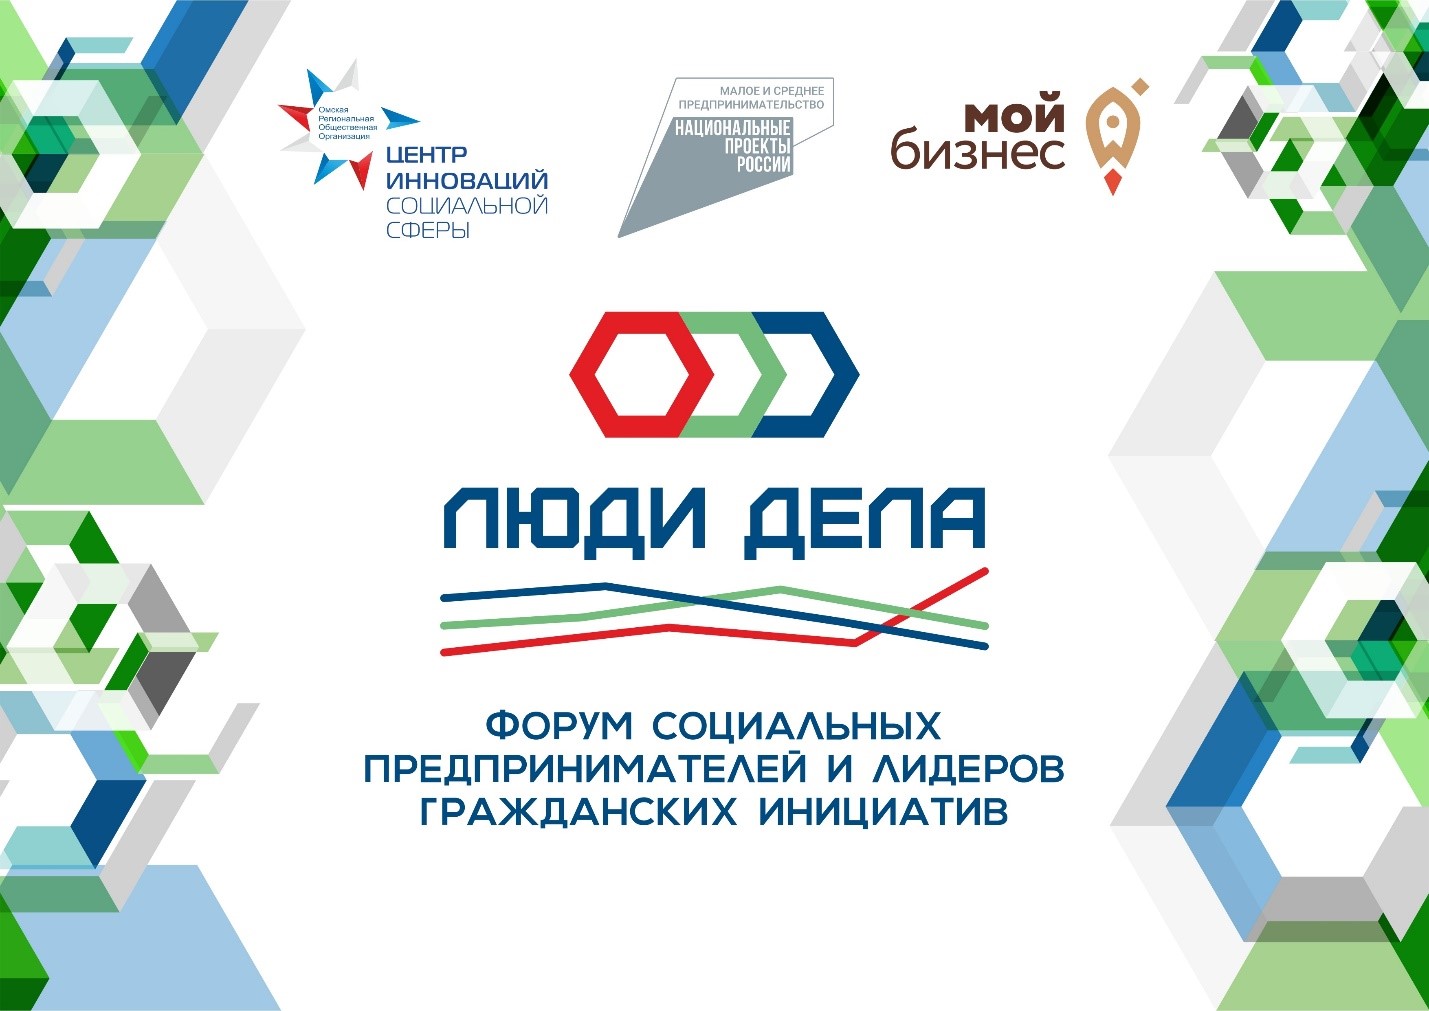 В Омске 1 октября стартует Форум социальных предпринимателей и лидеров гражданских инициатив «Люди дела»